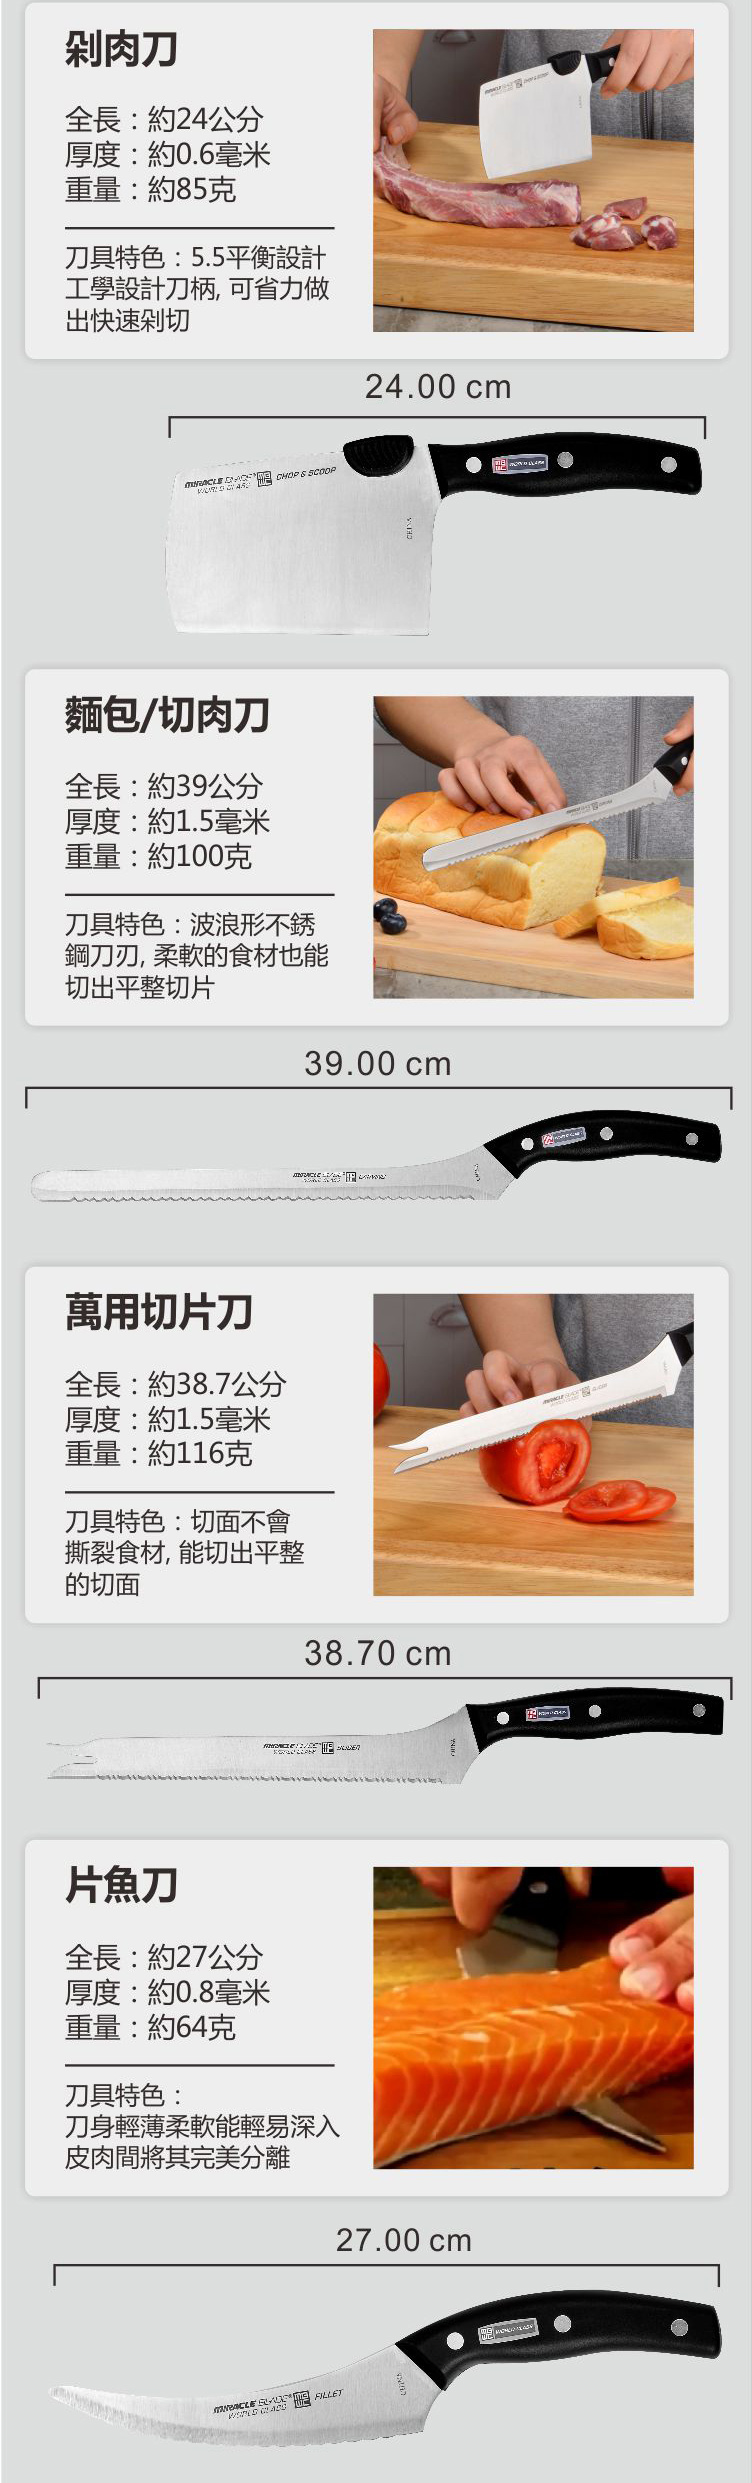 美國熱銷傳奇不鏽鋼廚房刀具組(13件刀具組)